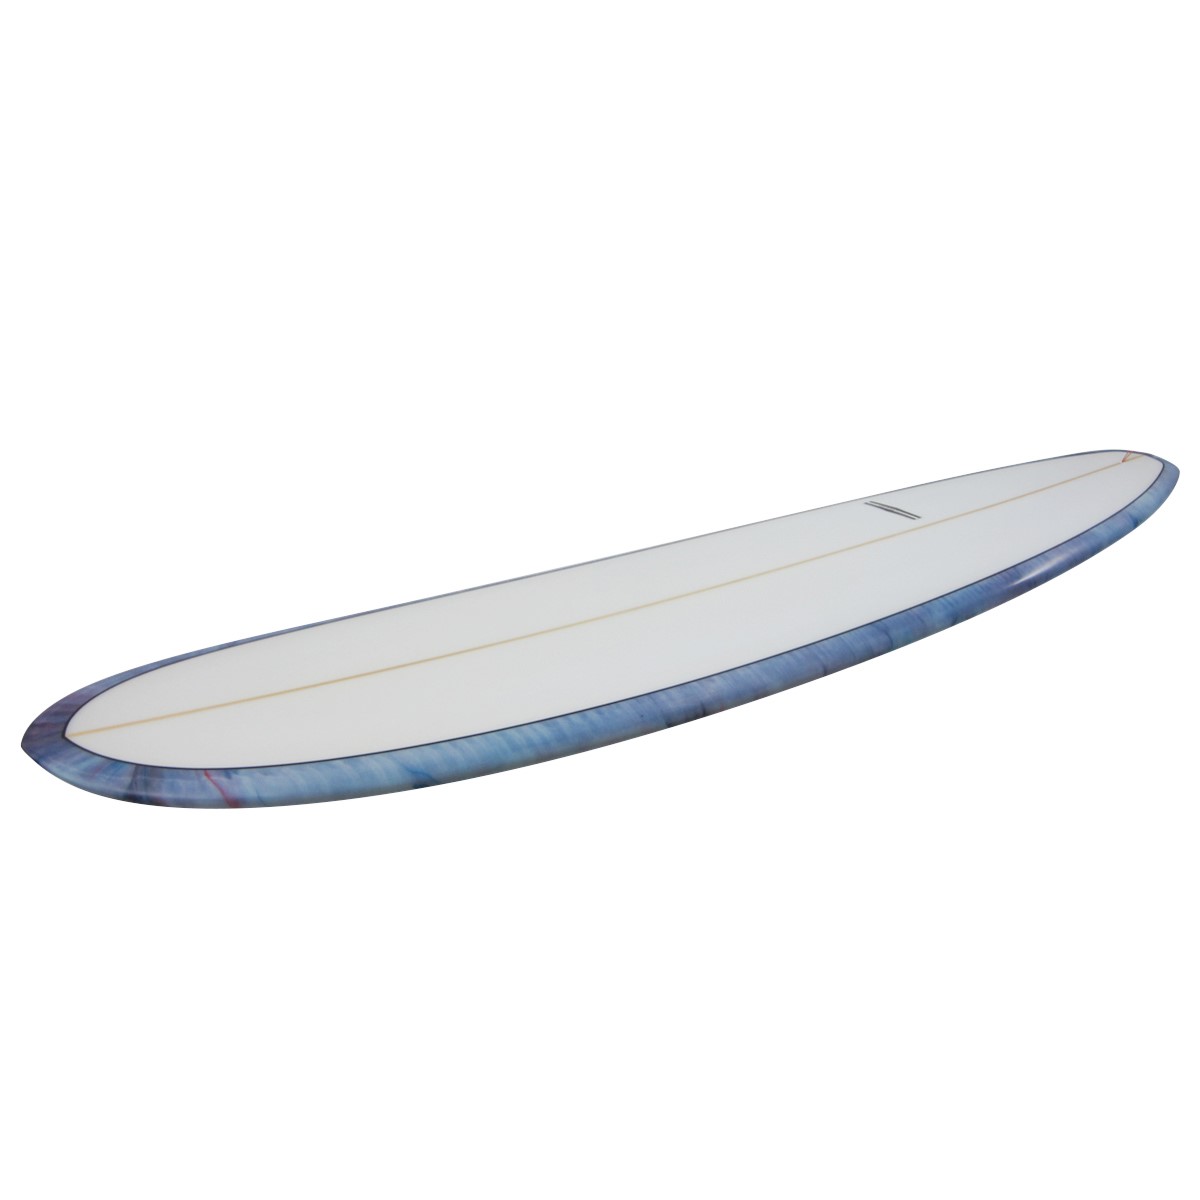 YU SURF CLASSIC / Cusotm 9`1 Shaped by YU